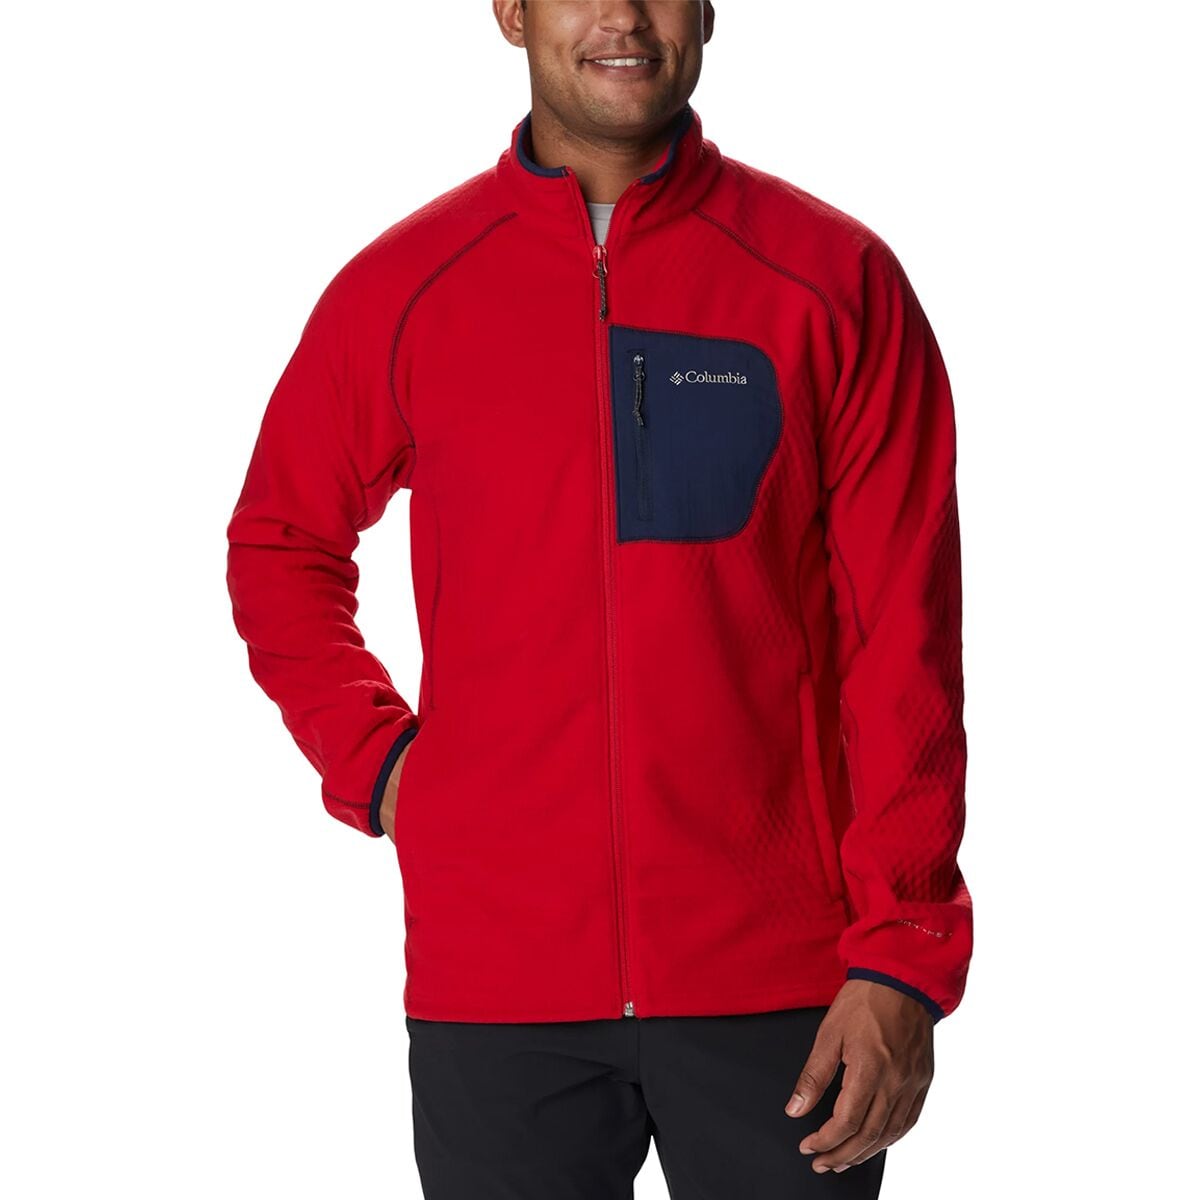 Columbia Outdoor Tracks Full-Zip Jacket - Men's - Clothing